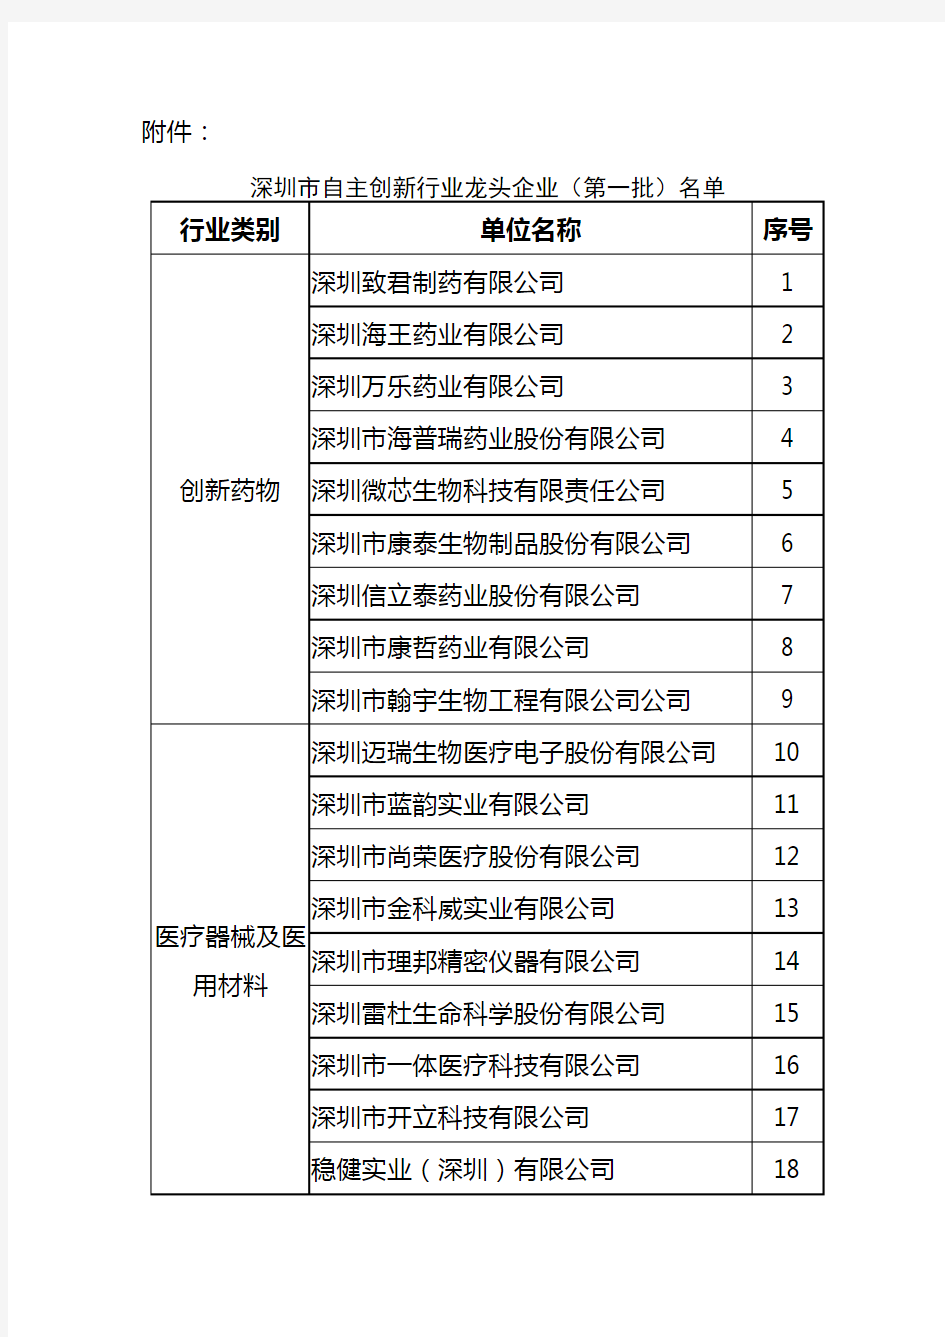 深圳市自主创新行业龙头企业第一批名单